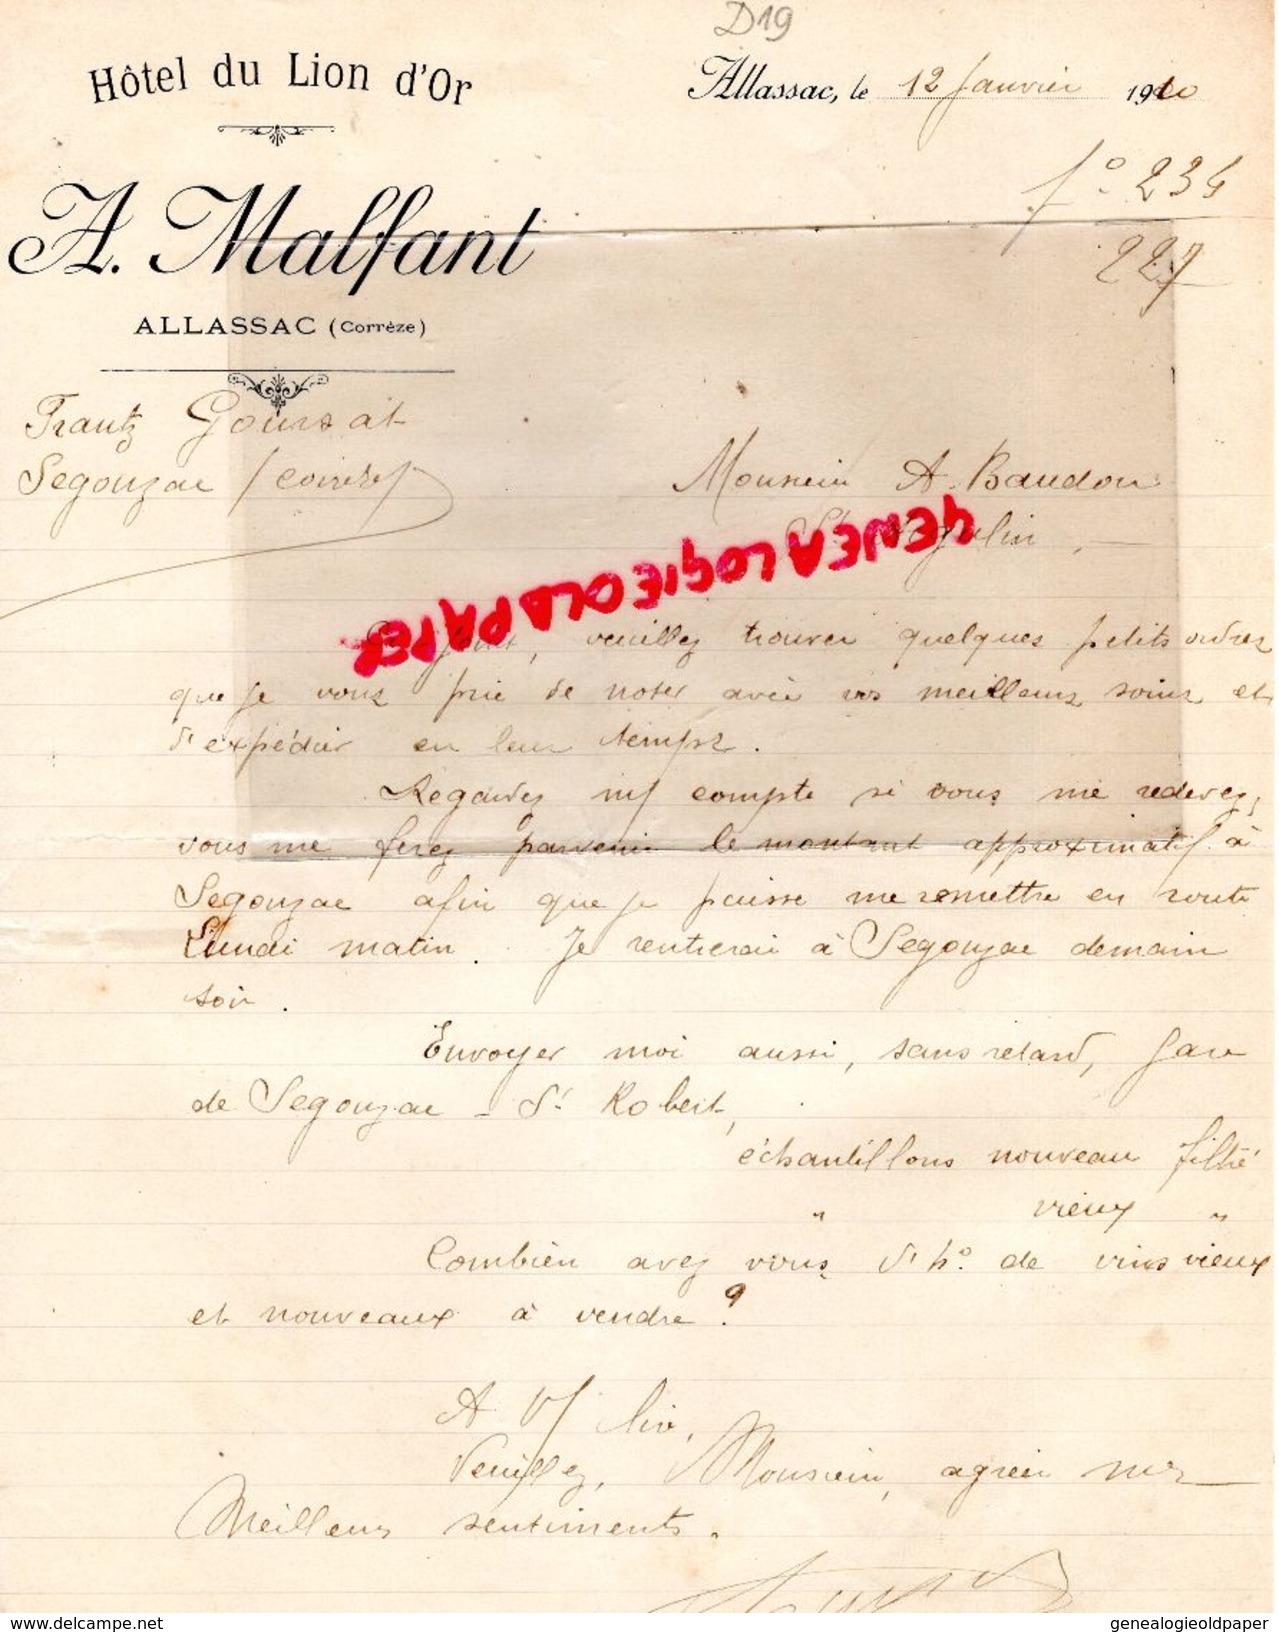 19- ALLASSAC - LETTRE MANUSCRITE A. MALFANT -HOTEL DU LION D' OR-1910  FRANTZ GOURSAT A SEGONZAC - Petits Métiers